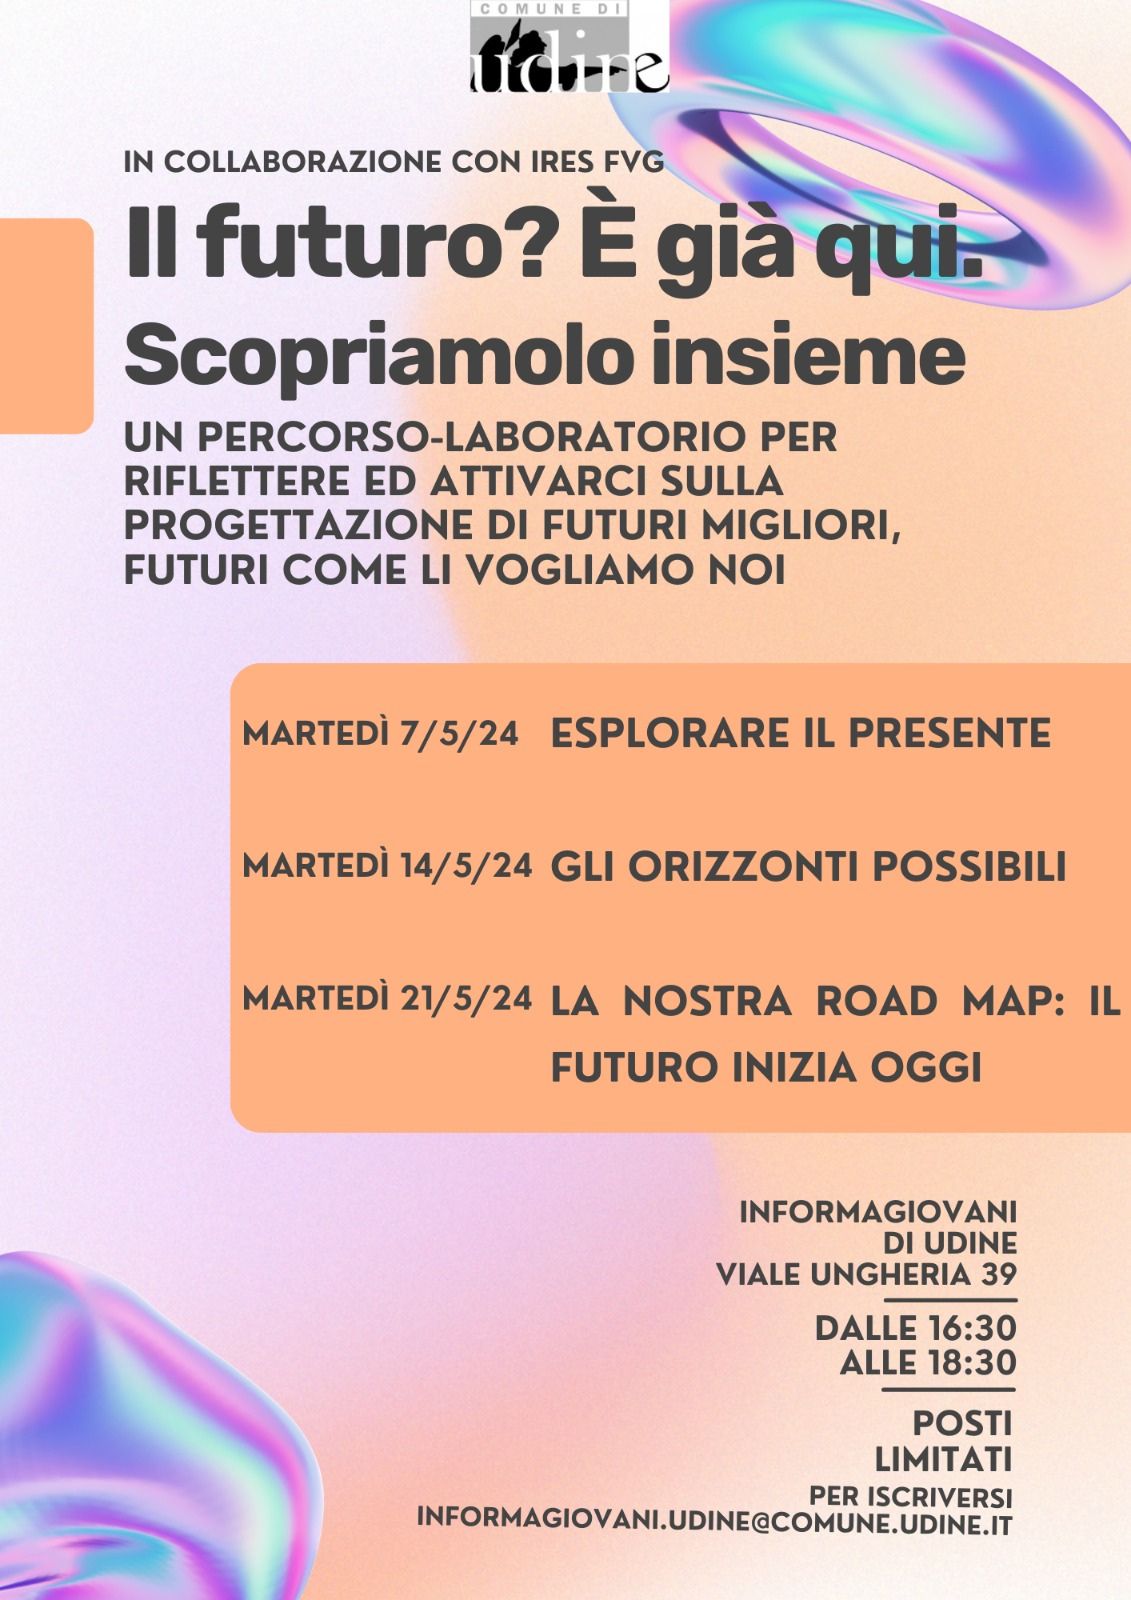 "LABORATORI DI FUTURO" - Informagiovani di Udine